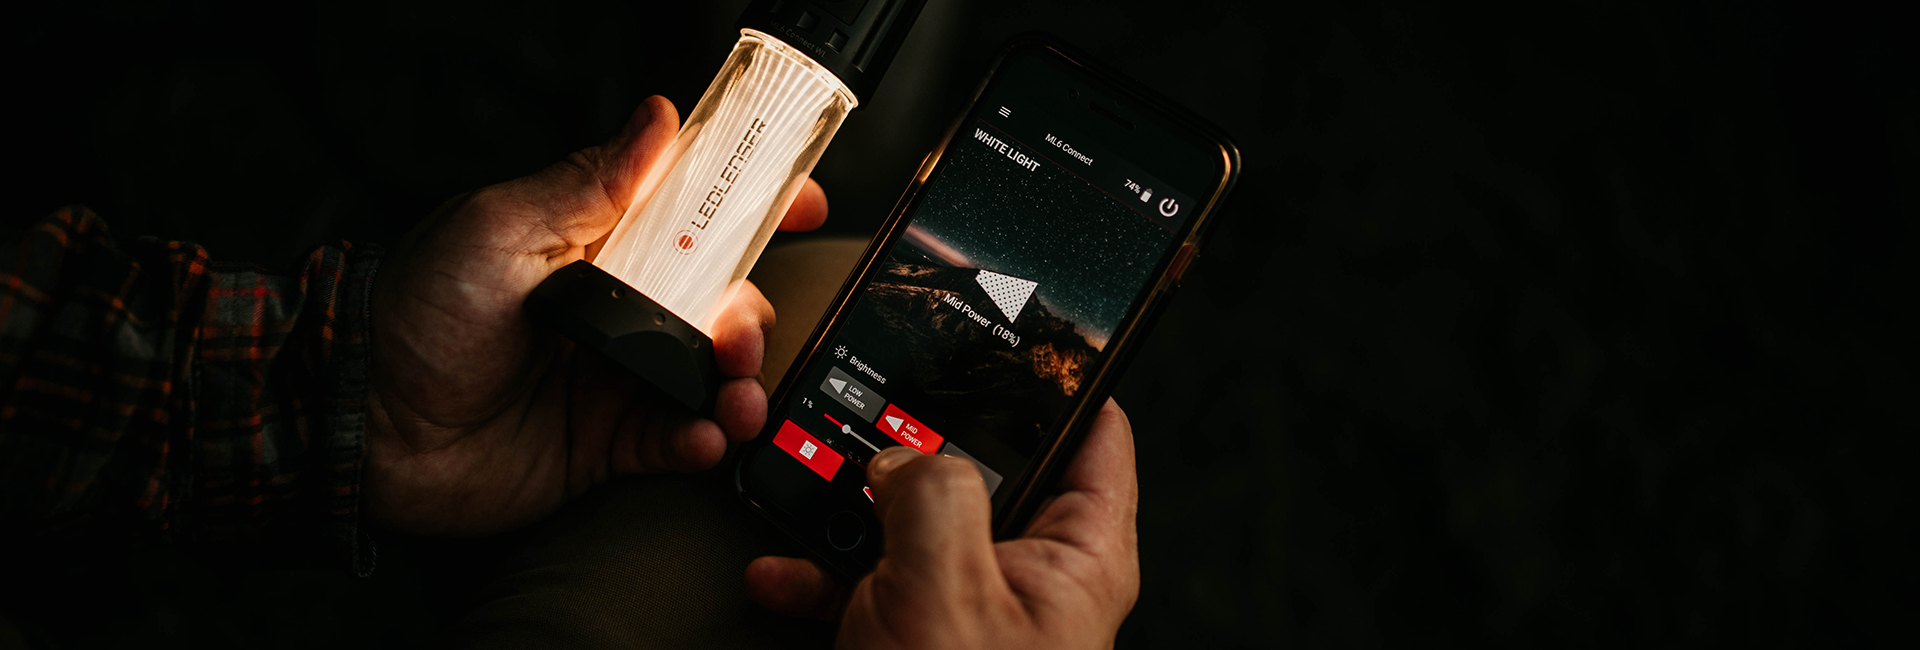 Campinglampe wird mit Smartphone App gesteuert